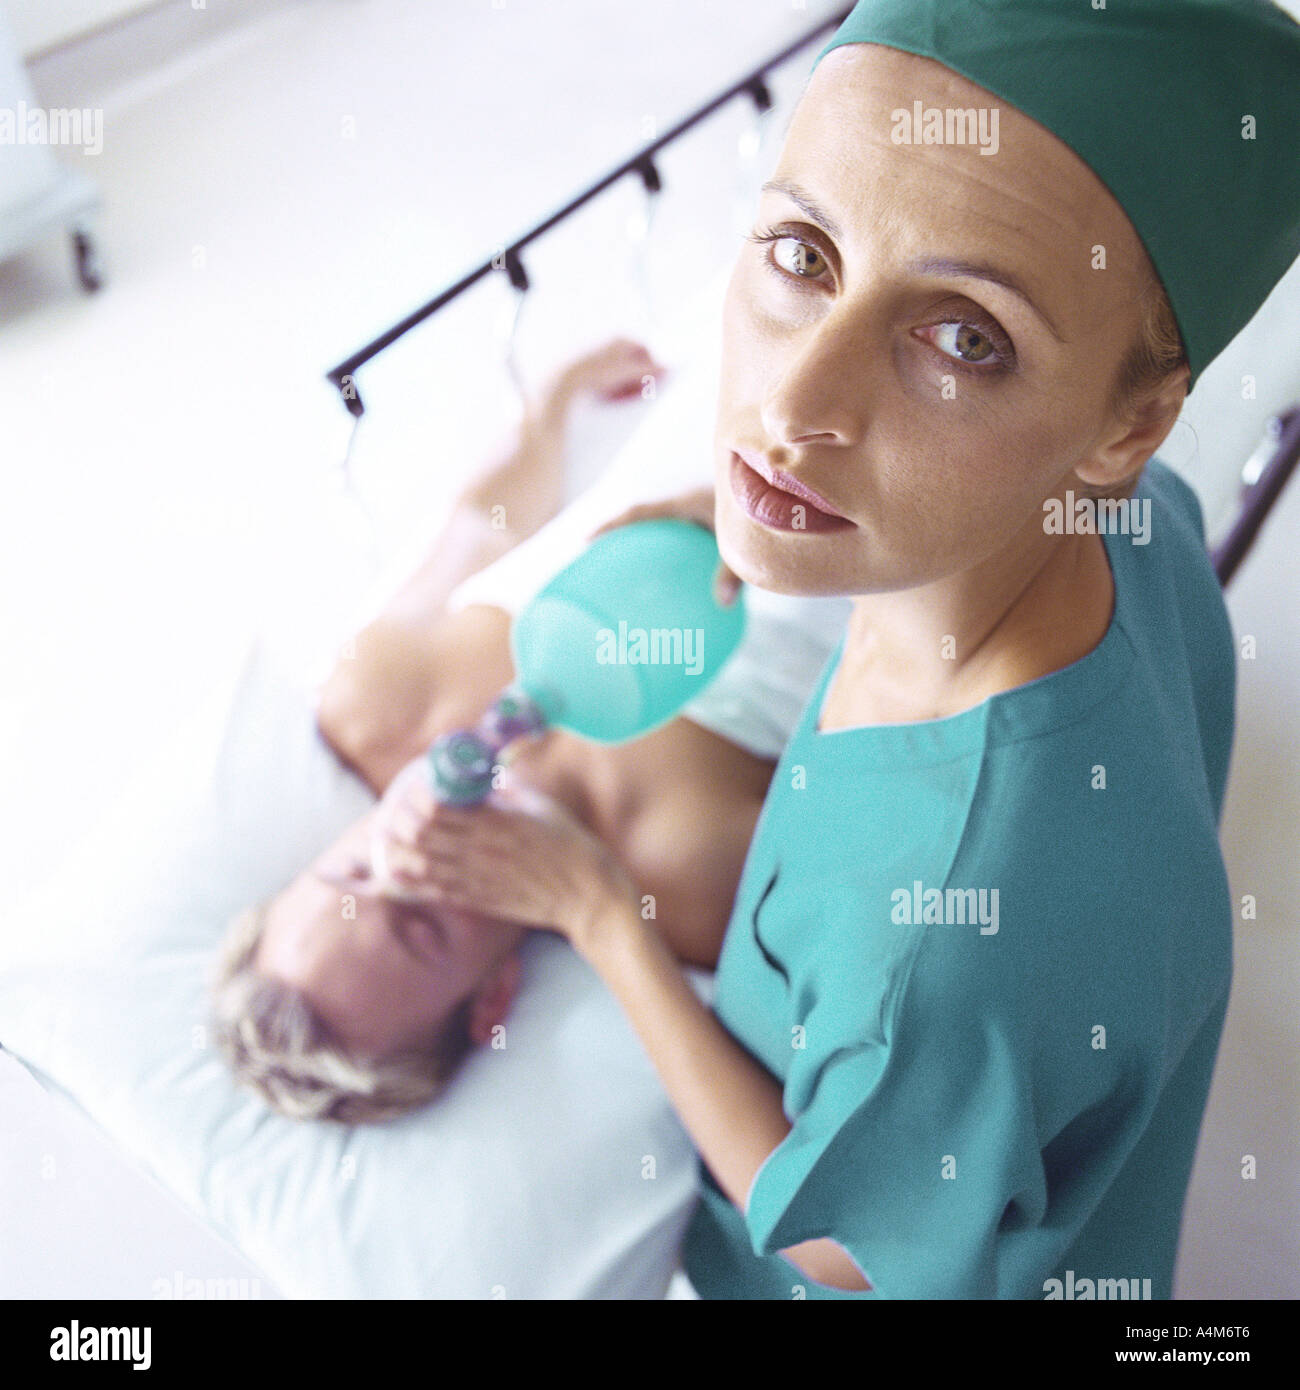 Female doctor holding masque à oxygène sur le visage du patient, high angle view Banque D'Images